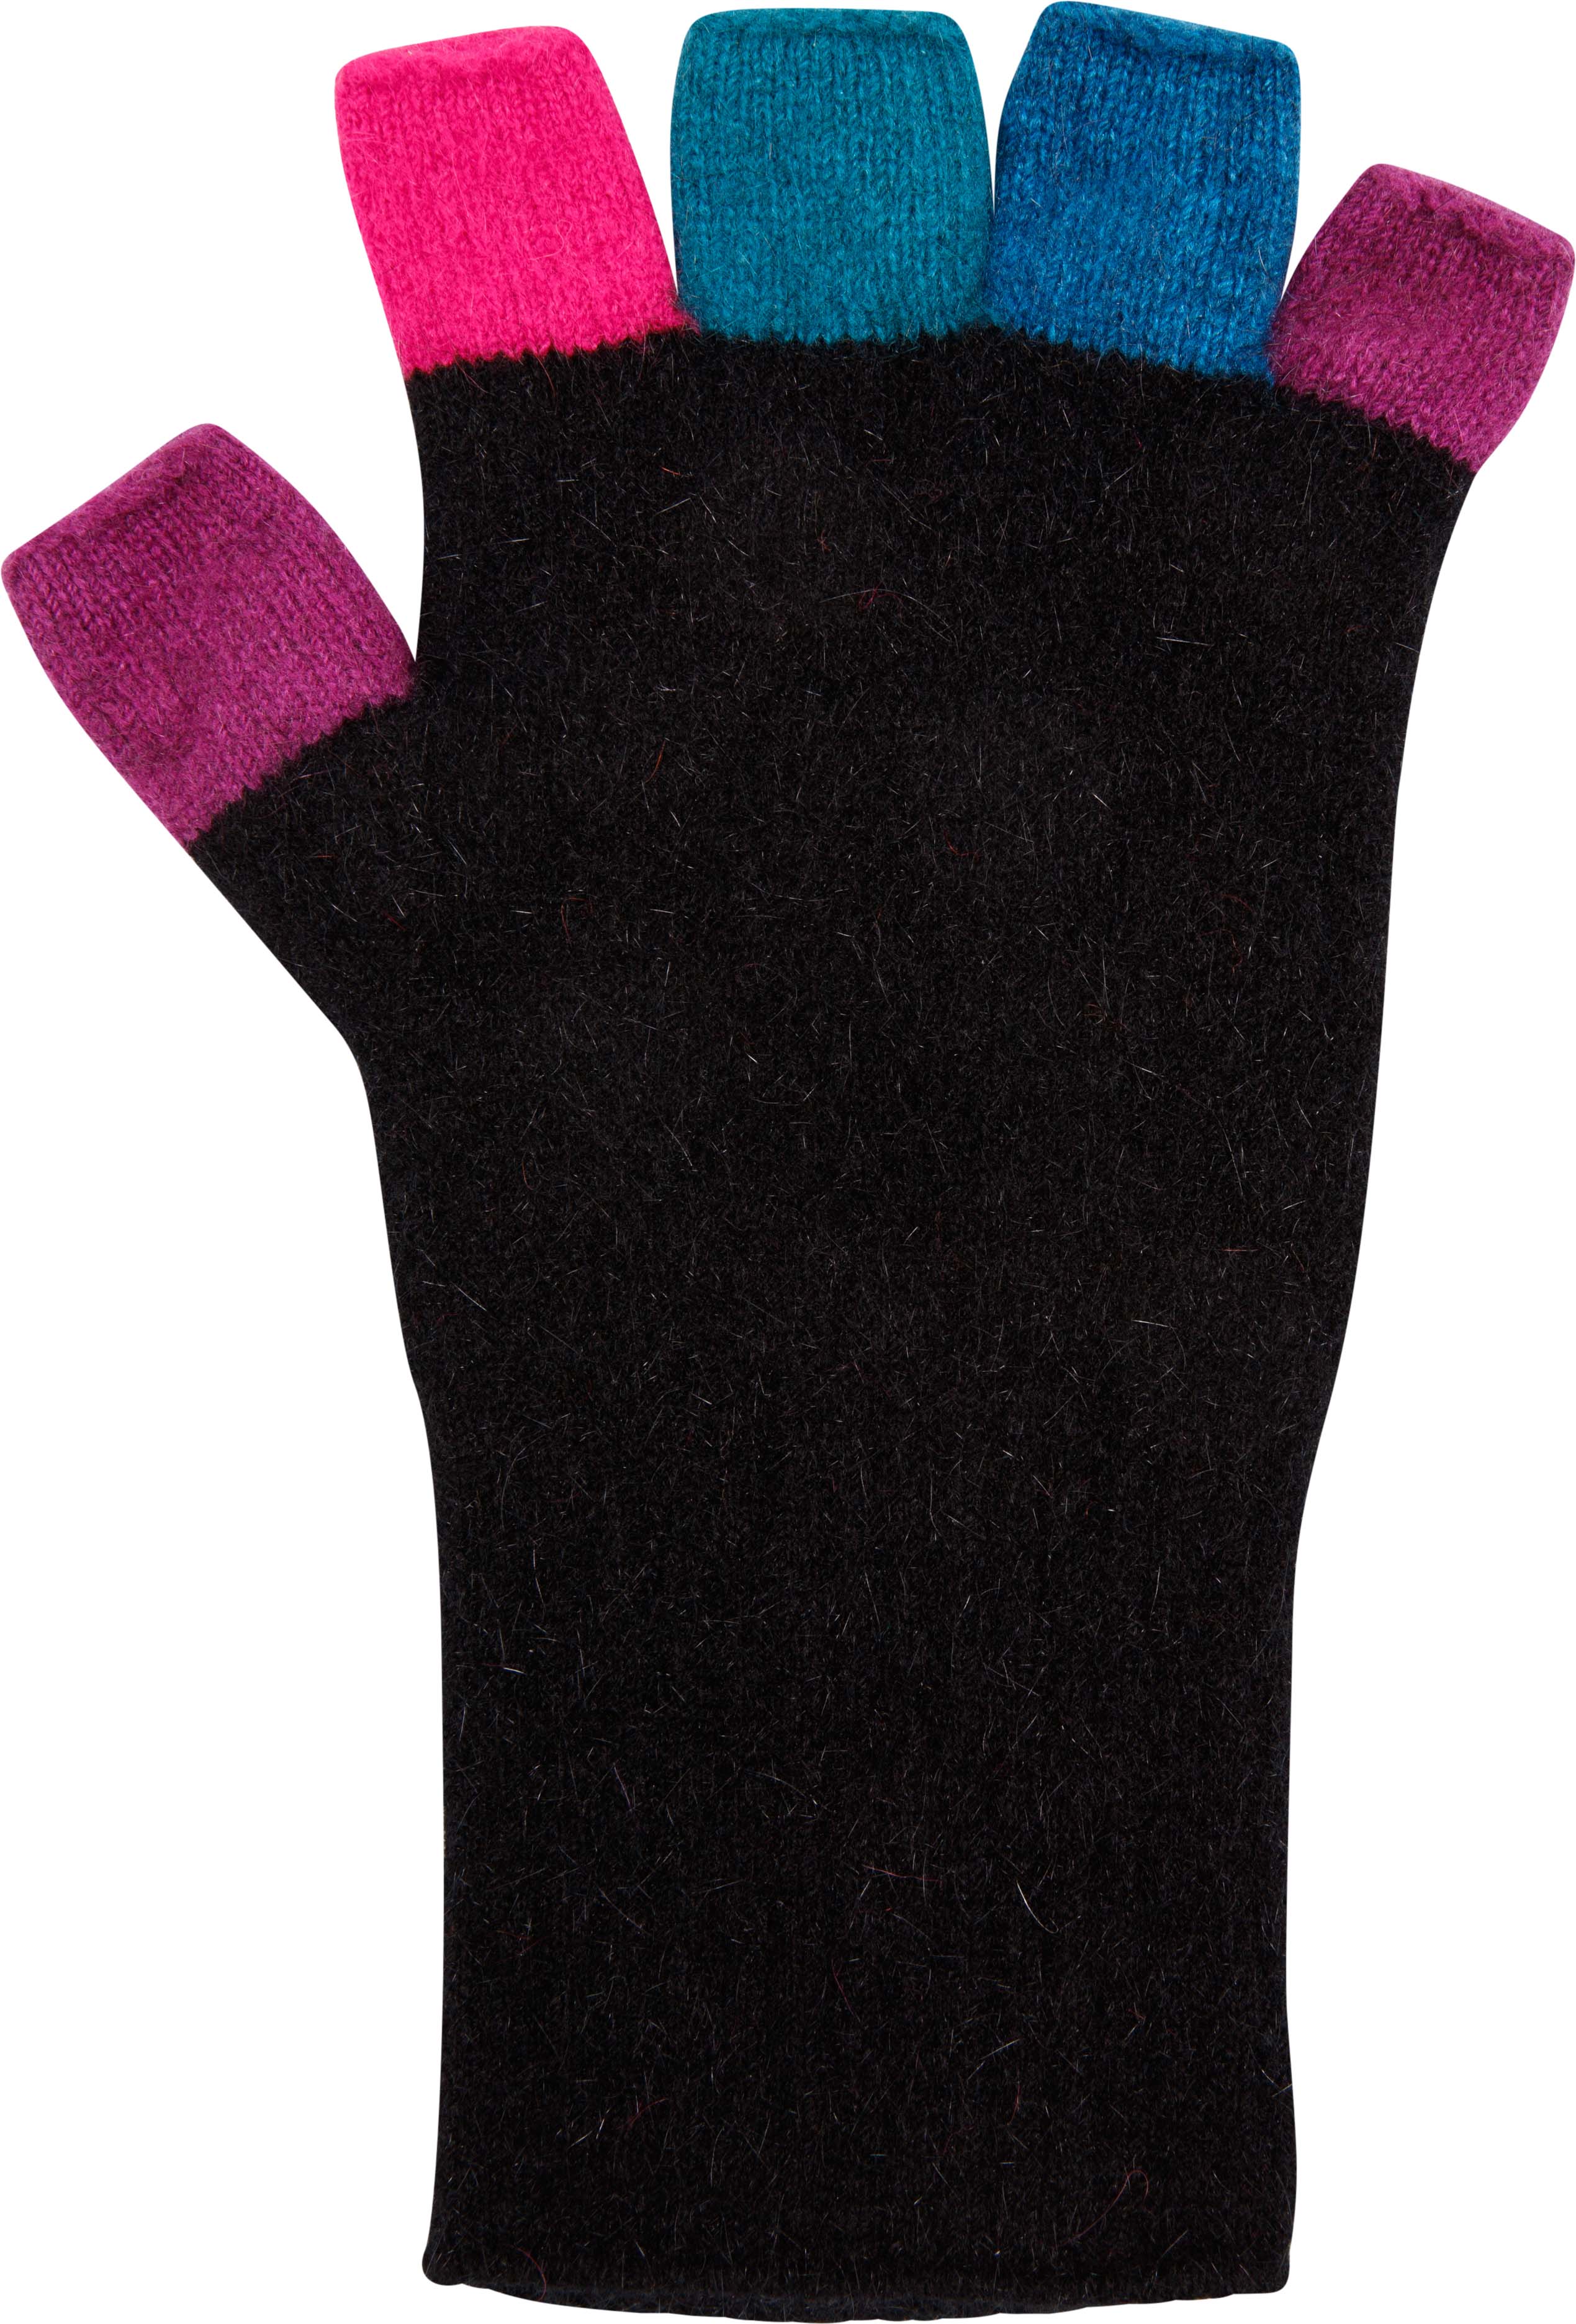 Possum Merino Multi-colour Fingerless Gloves - Native World